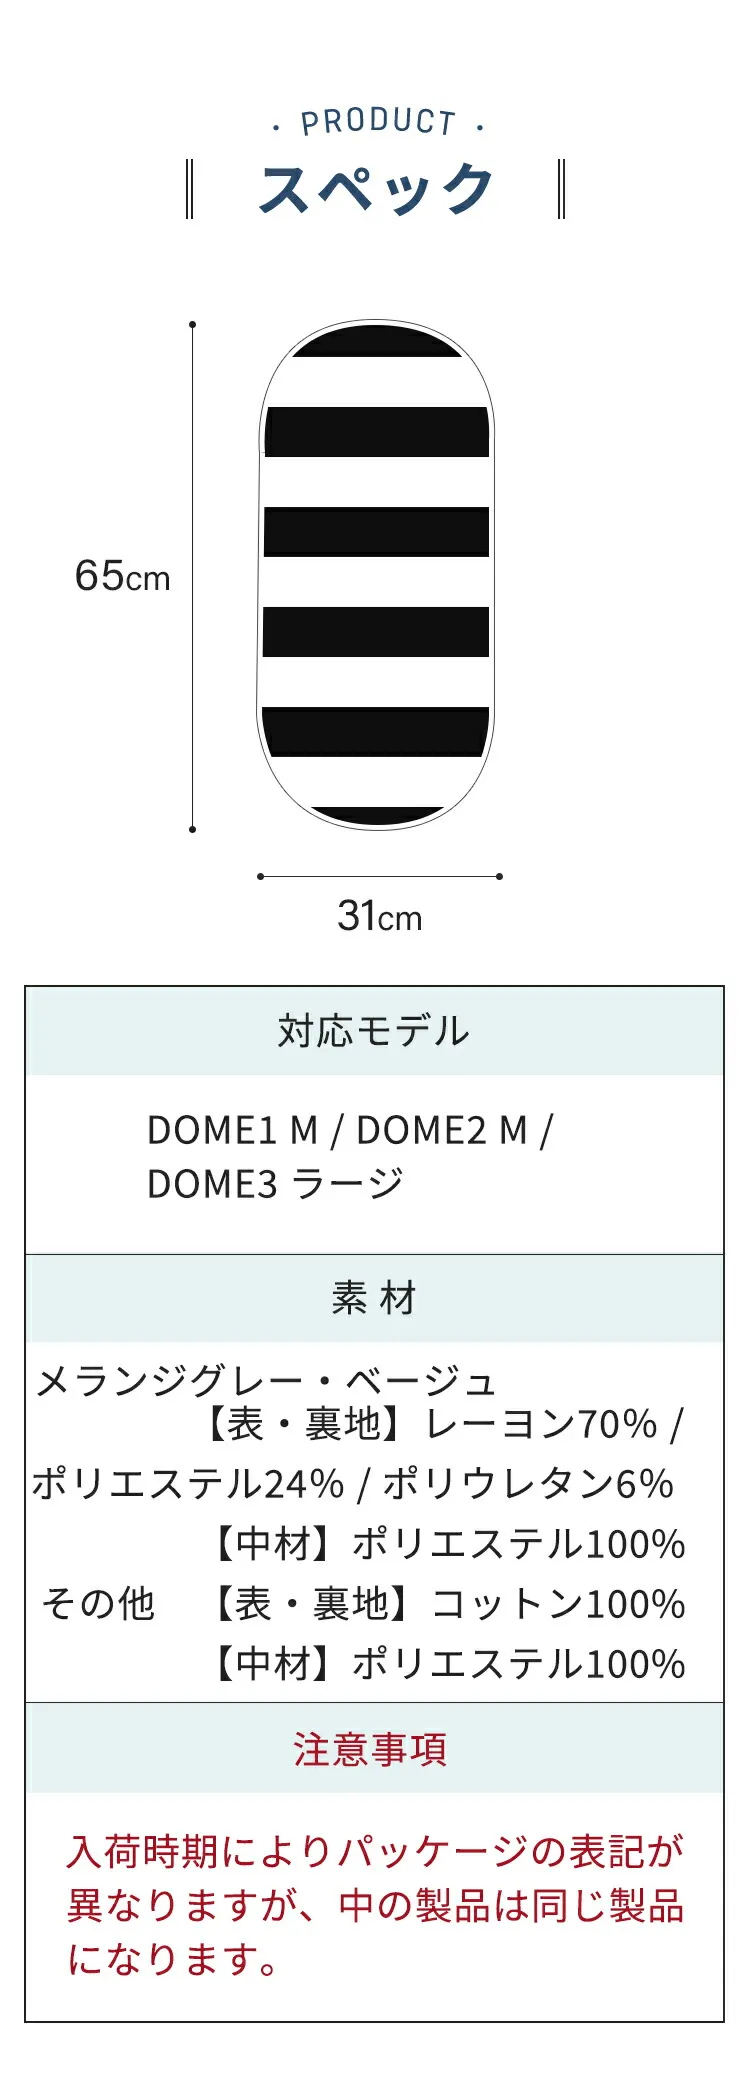 DOME専用マット M・ラージサイズ